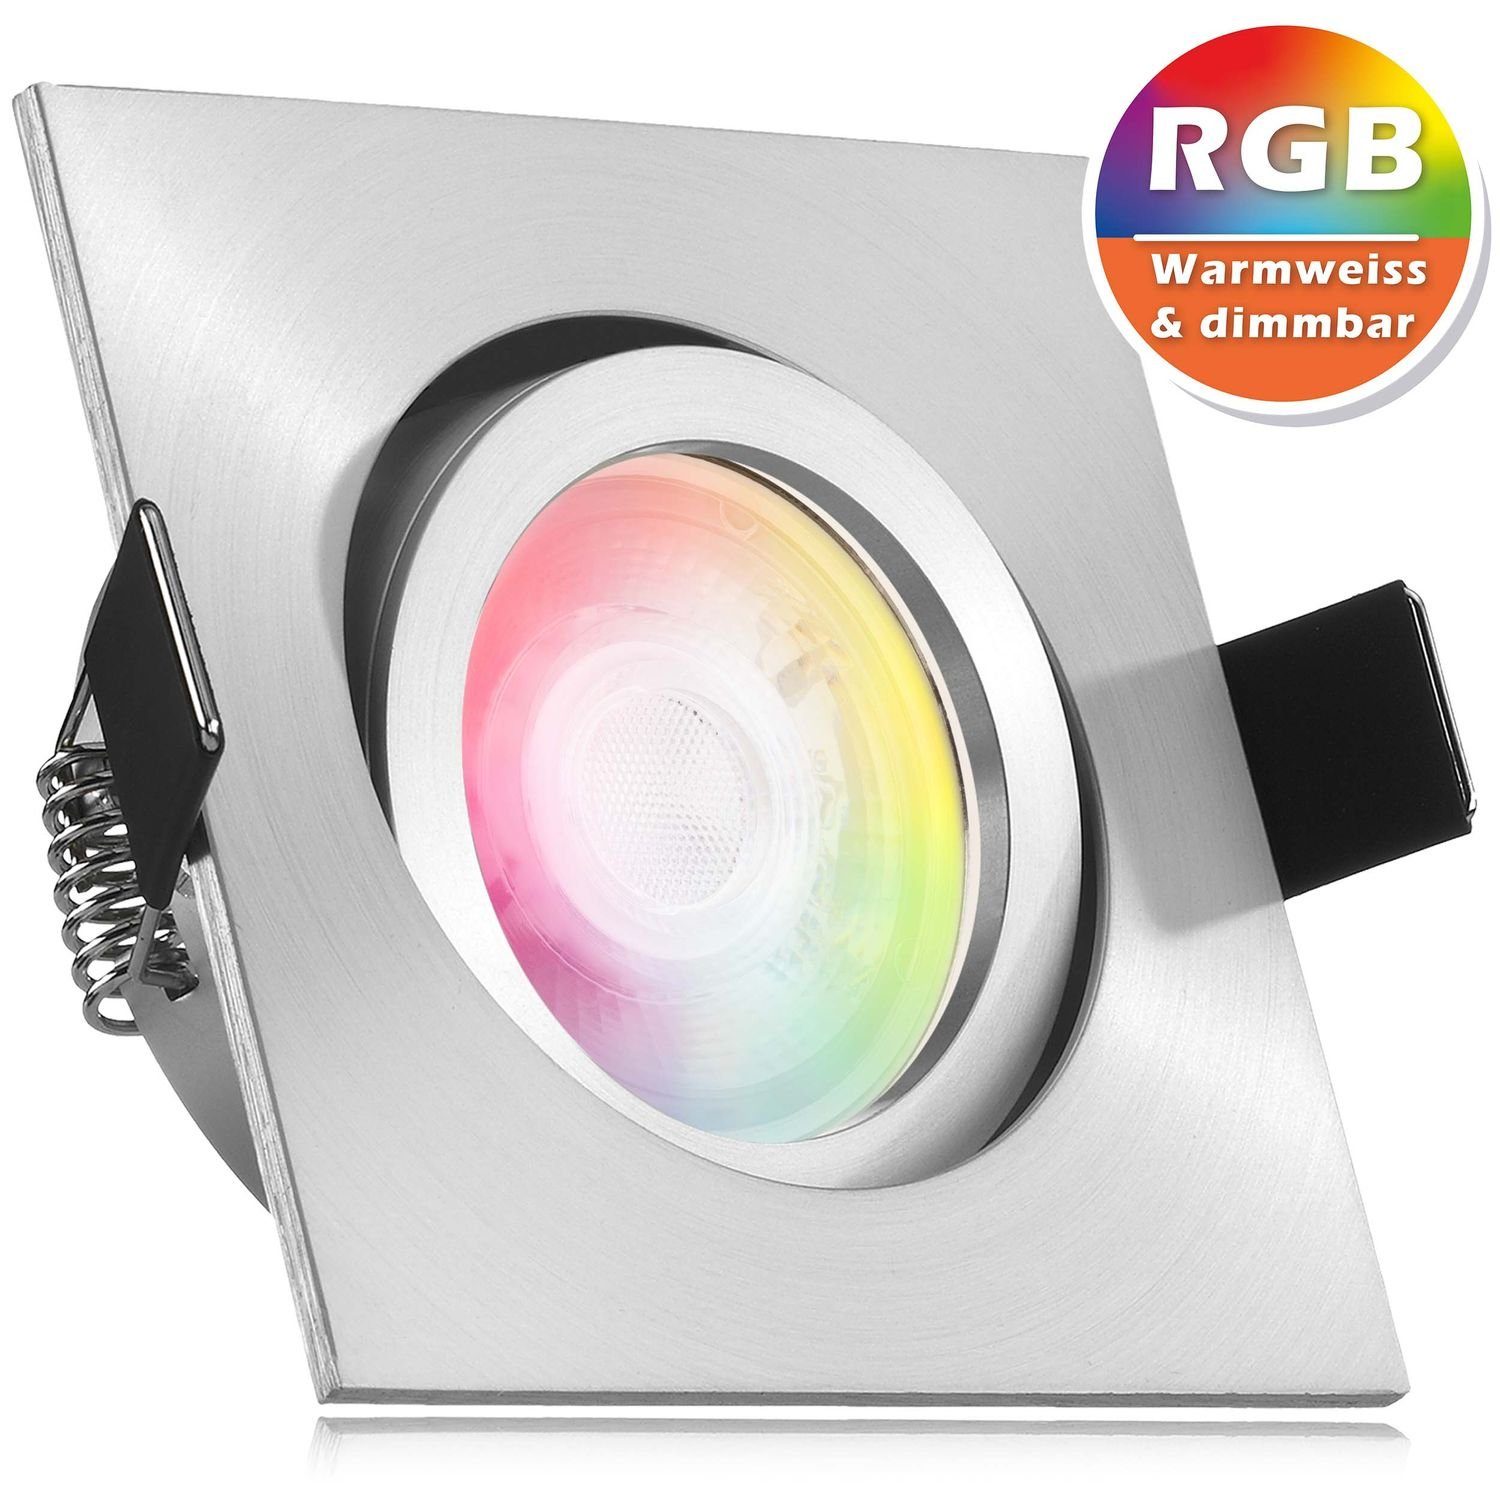 LEDANDO LED Einbaustrahler RGB LED Einbaustrahler Set extra flach in aluminium matt mit 3W LED vo